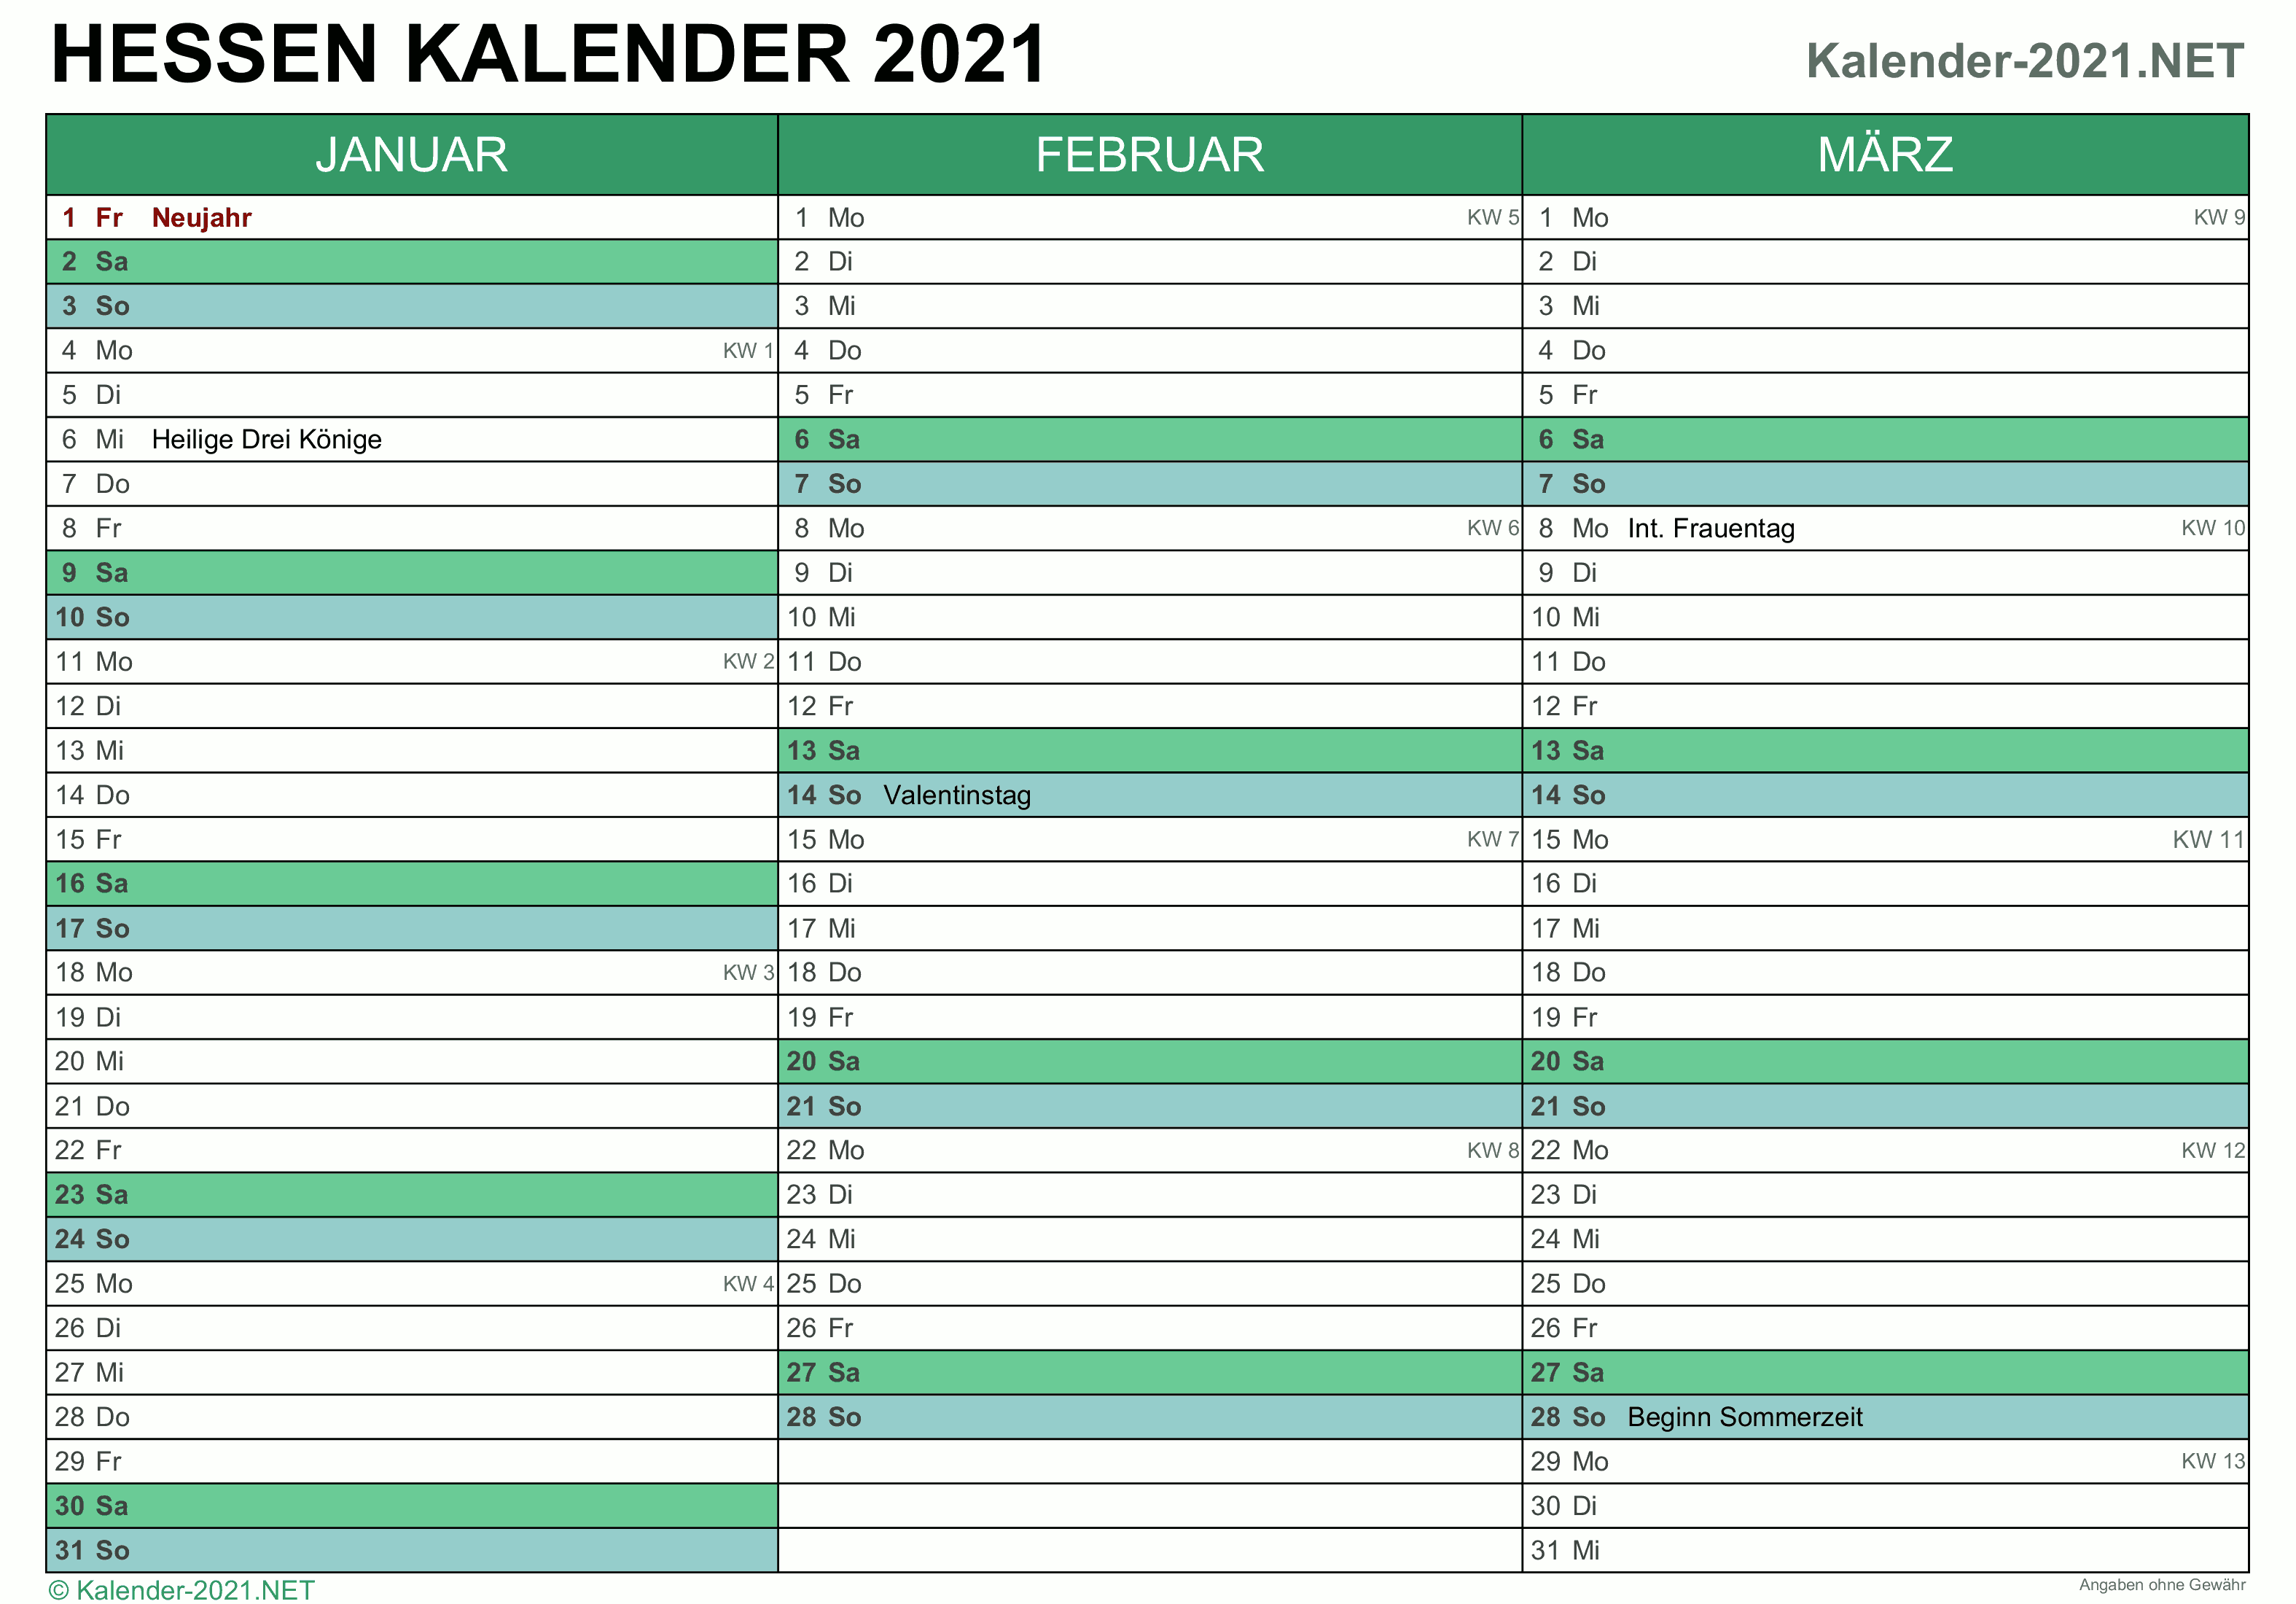 KALENDER 2021 ZUM AUSDRUCKEN - Kostenlos!